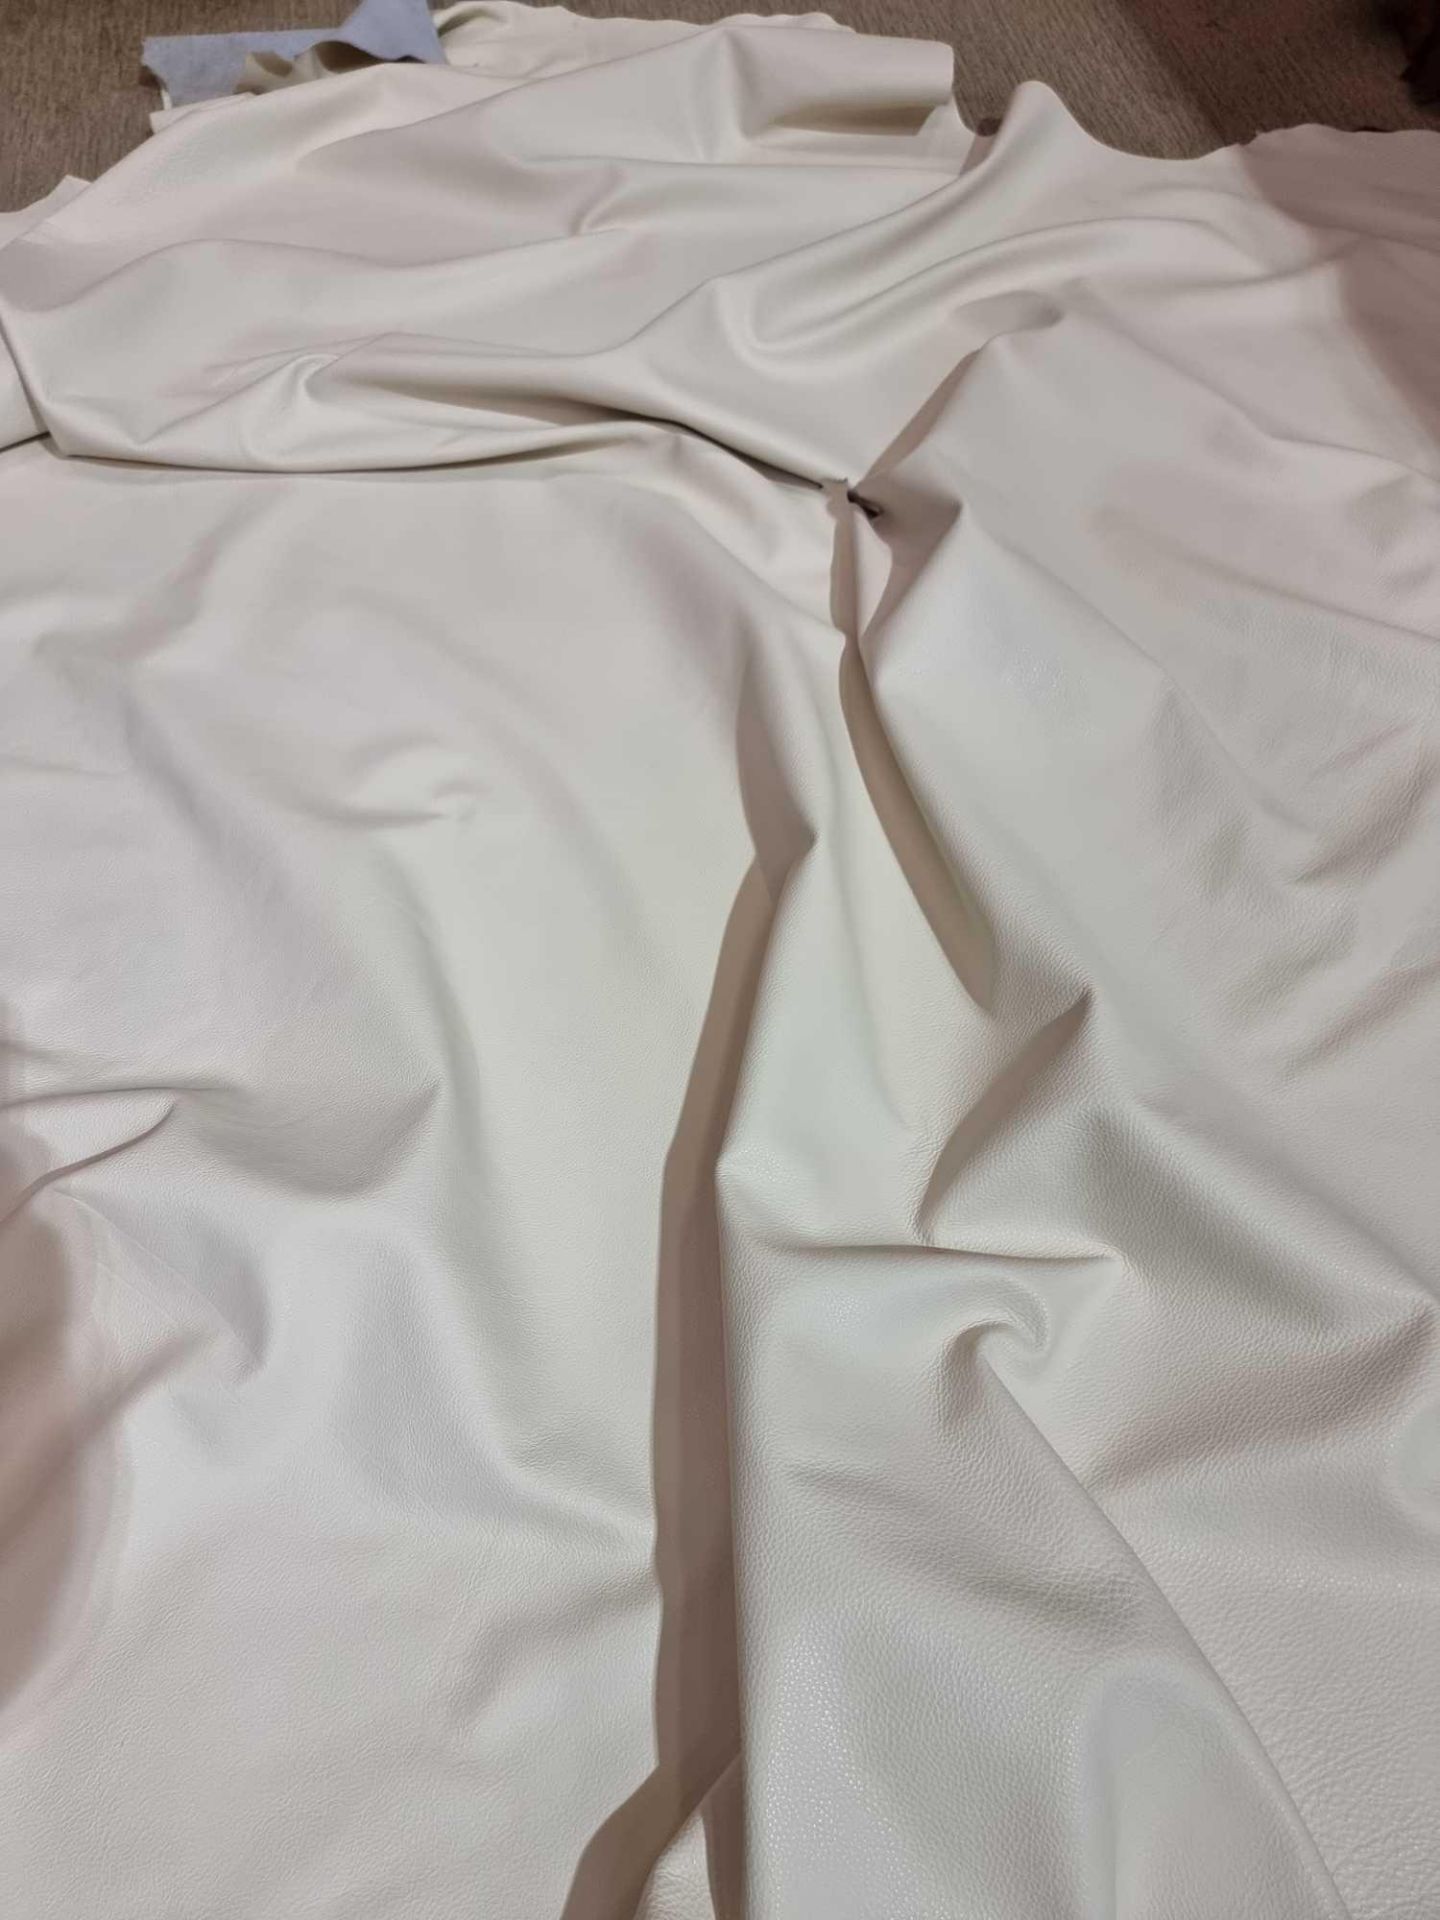 Trim International Artic Vogue White Leather Hide approximately 5.04mÂ² 2.4 x 2.1cm - Bild 2 aus 2